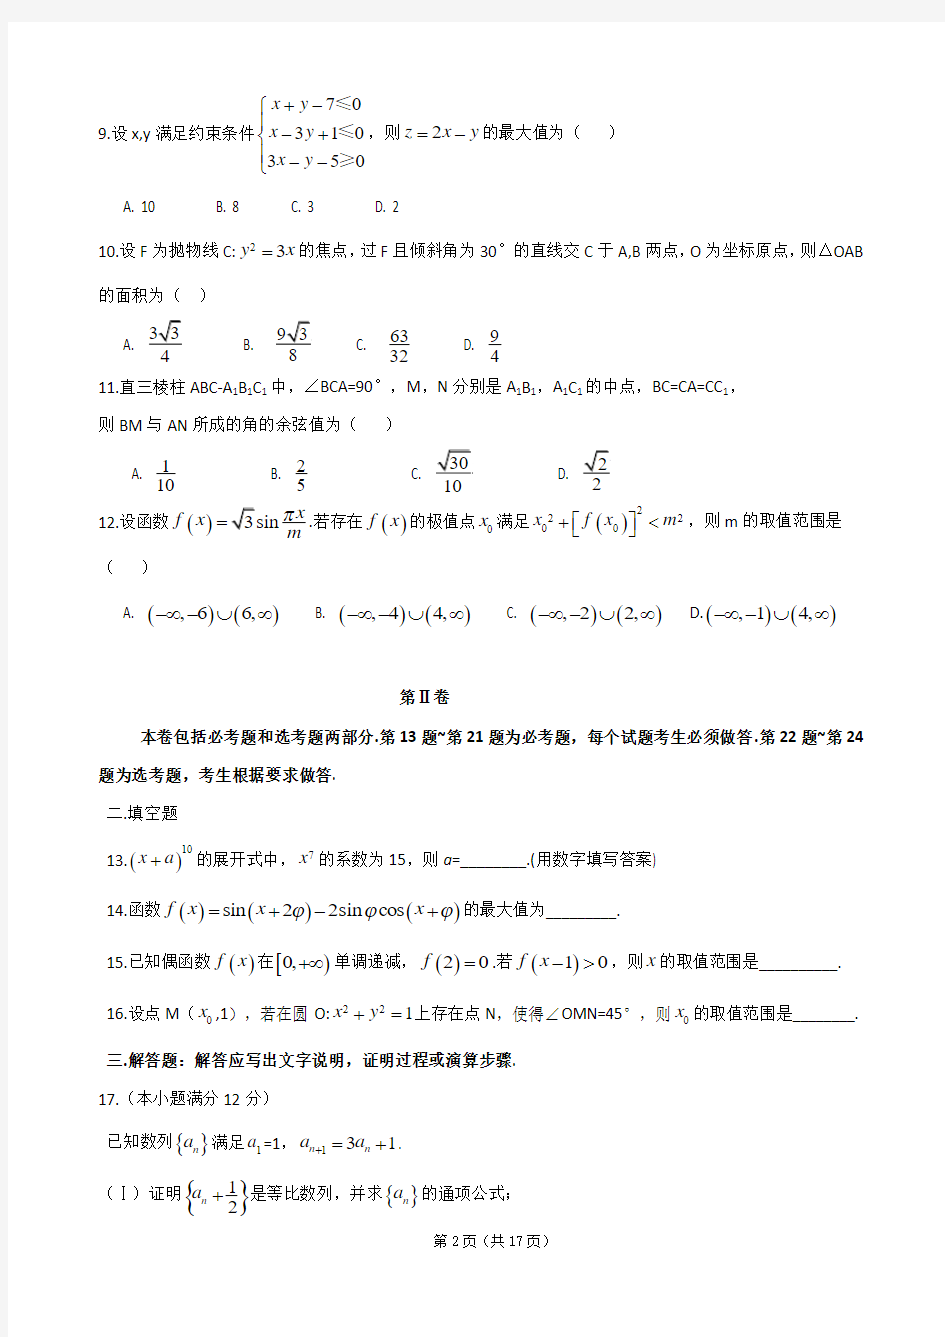 2014年高考真题——全国卷2 数学(理)(word版)